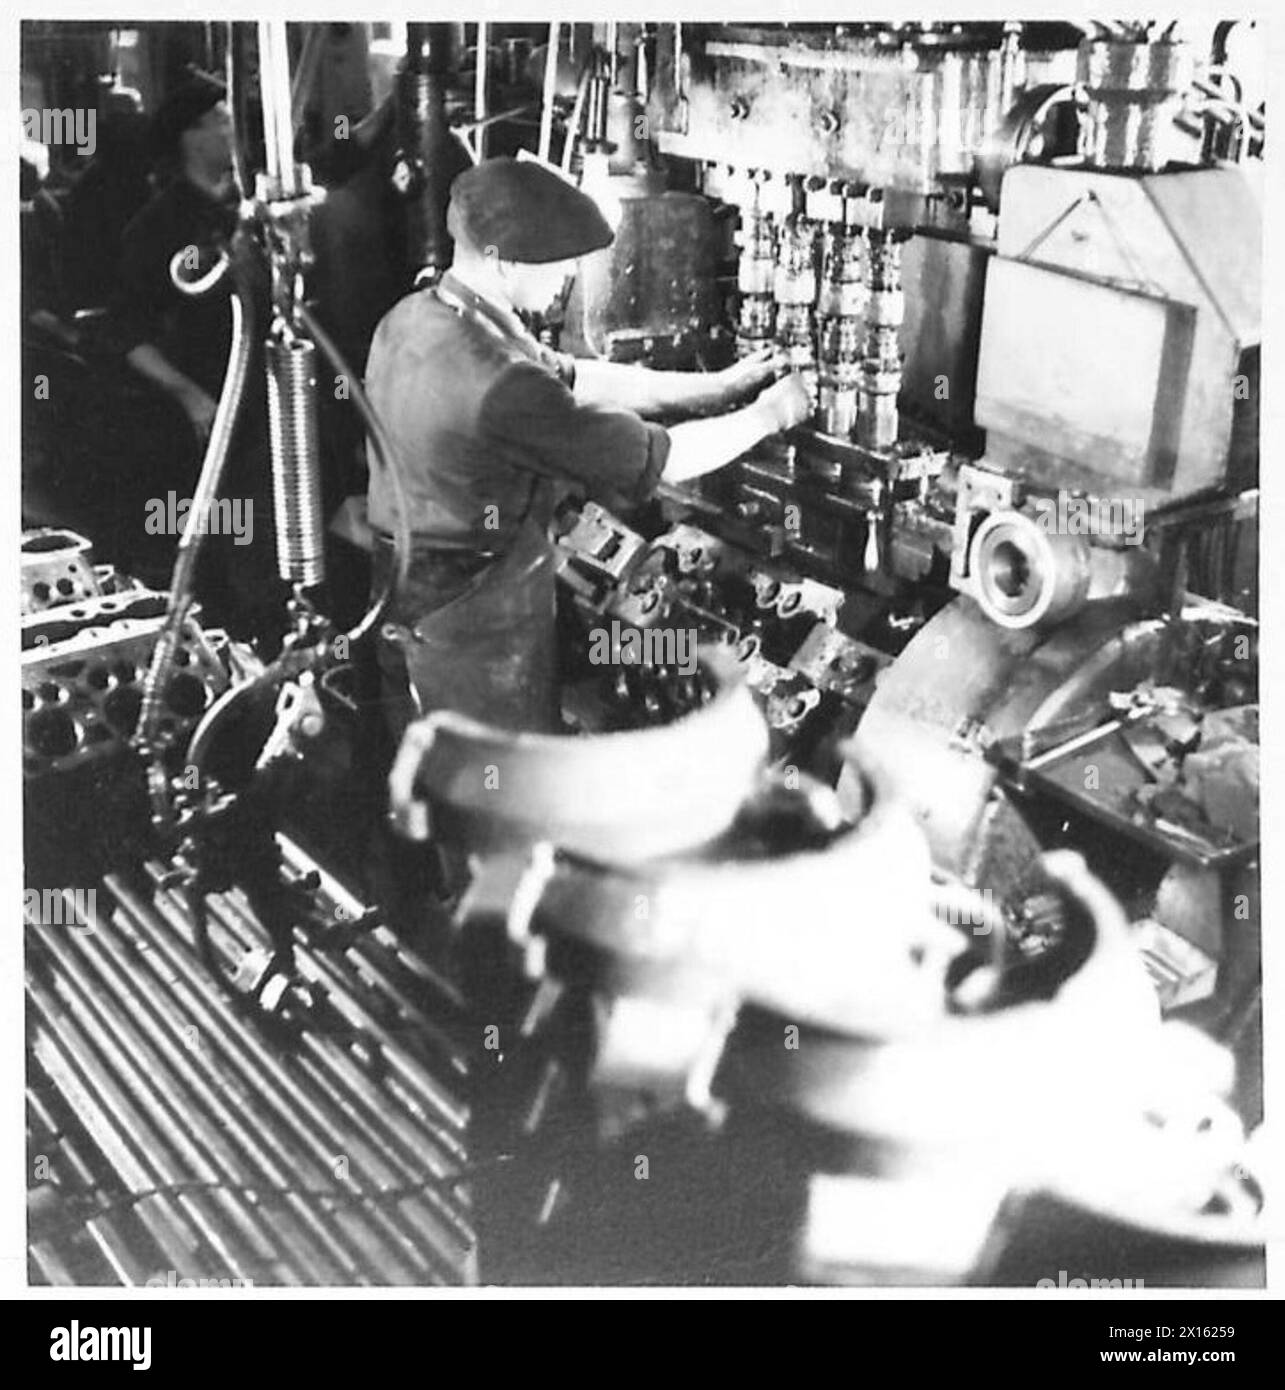 FORD LAVORA A COLONIA - la maggior parte dei macchinari è che l'impianto ha più di dieci anni e, secondo gli standard moderni, è obsoleto, ma riesce comunque a fare il suo lavoro e a mantenere in funzione la linea di produzione. Una delle macchine utilizzate per alesare i cilindri, eseguendo quattro cilindri in una completa operazione British Army of the Rhine Foto Stock